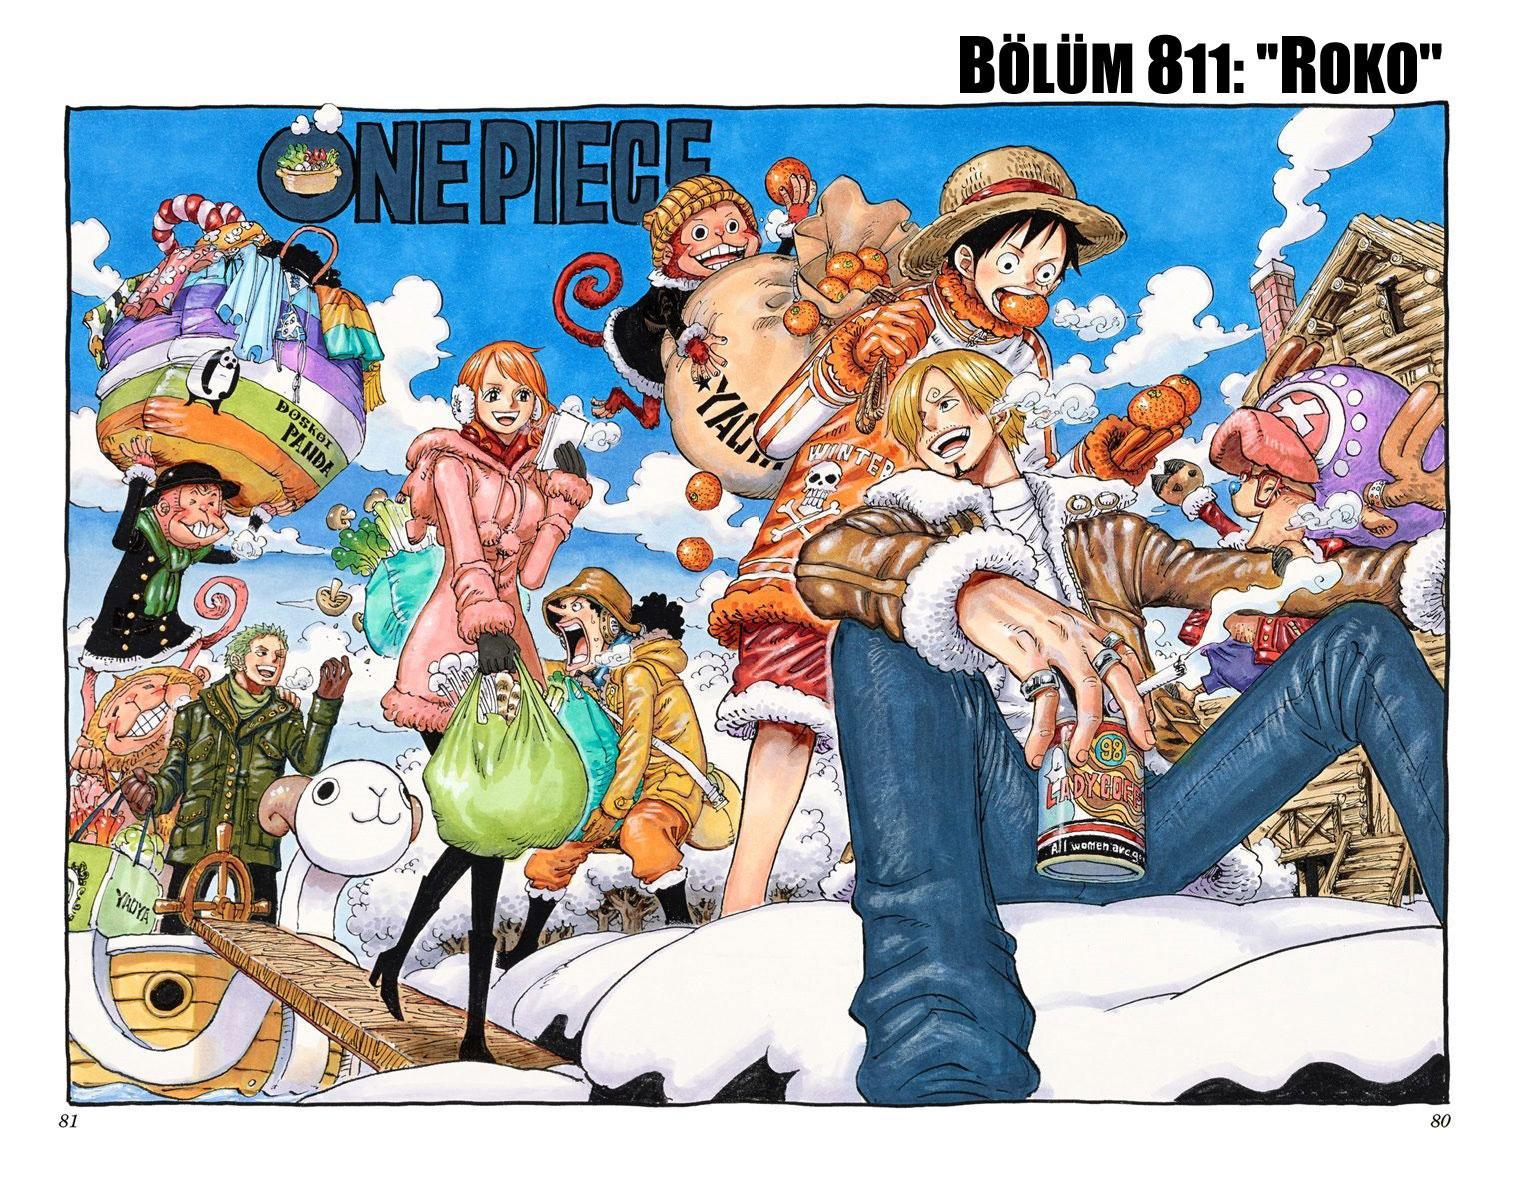 One Piece [Renkli] mangasının 811 bölümünün 2. sayfasını okuyorsunuz.